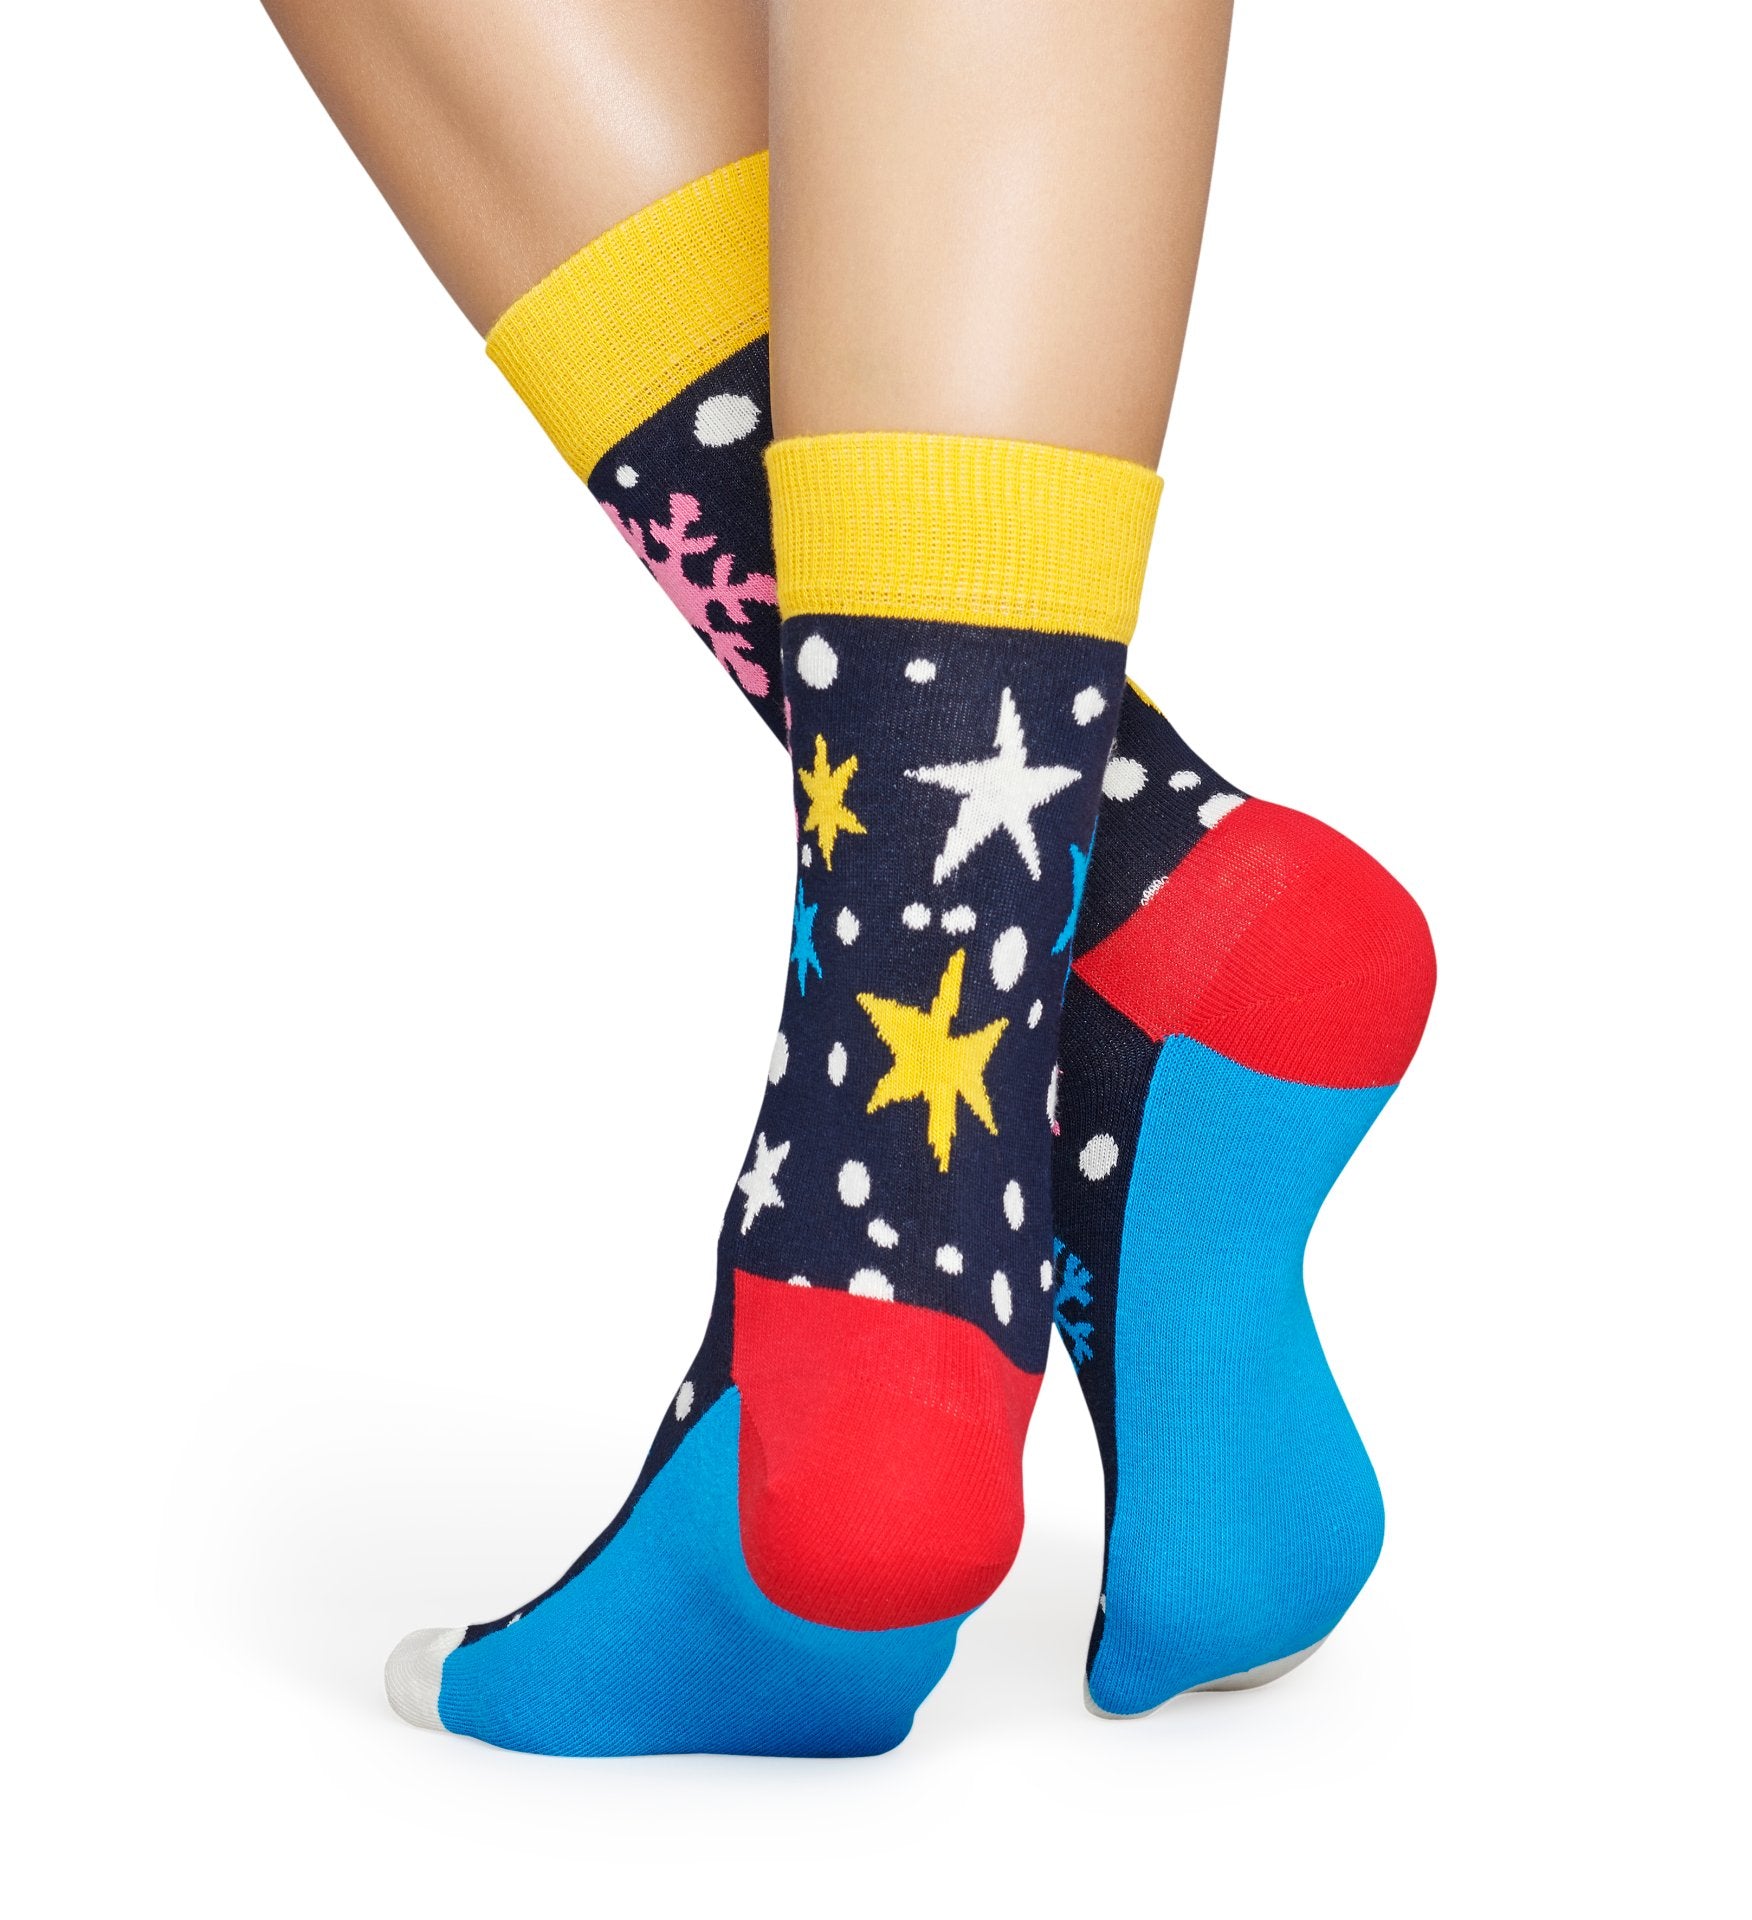 Modré ponožky Happy Socks so snehovými vločkami a hviezdami, vzor Twinkle Twinkle